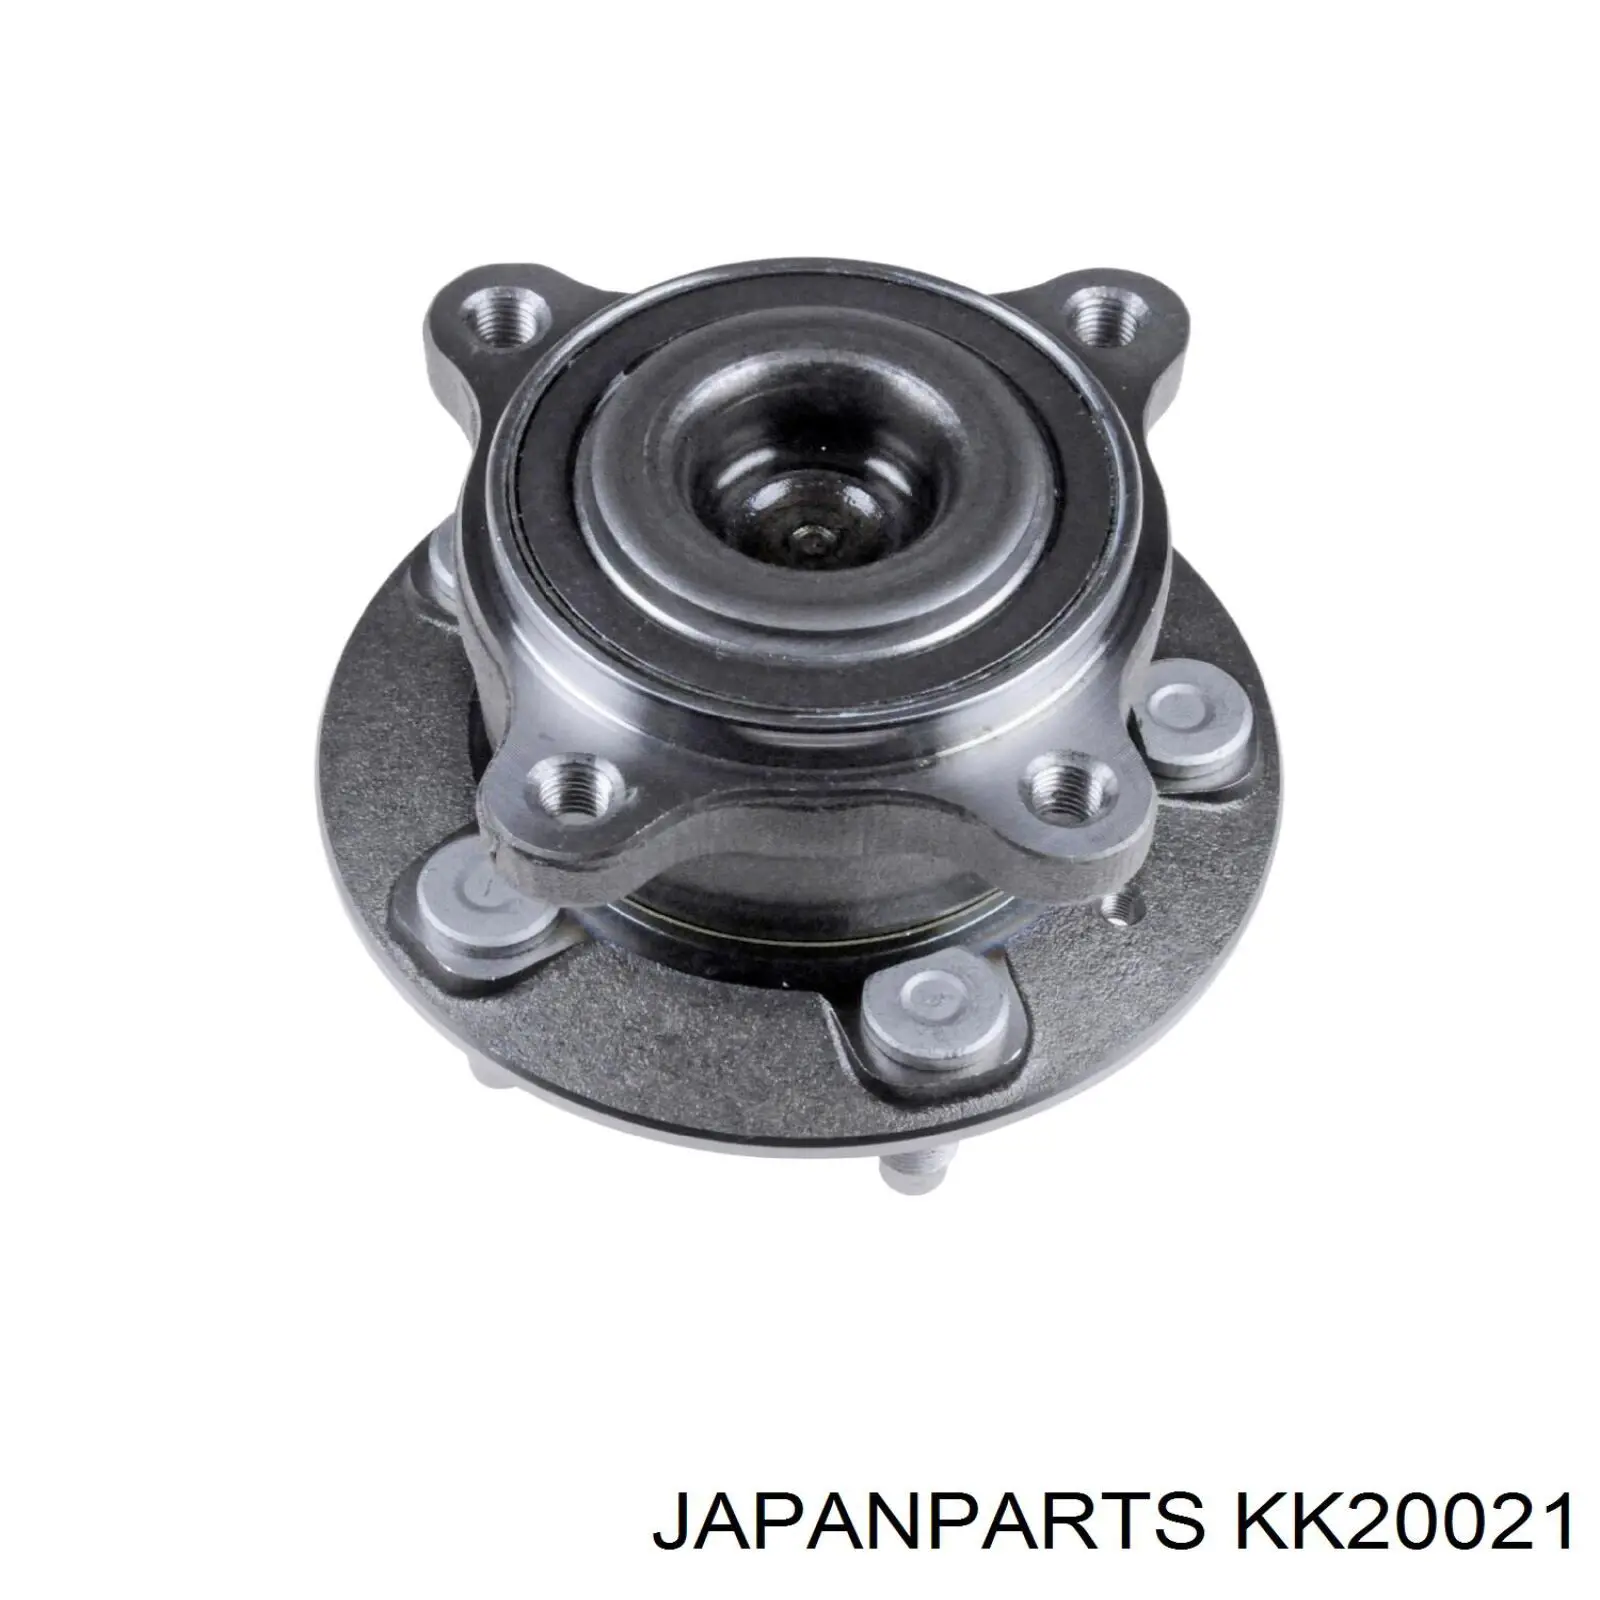 KK20021 Japan Parts cubo de rueda trasero